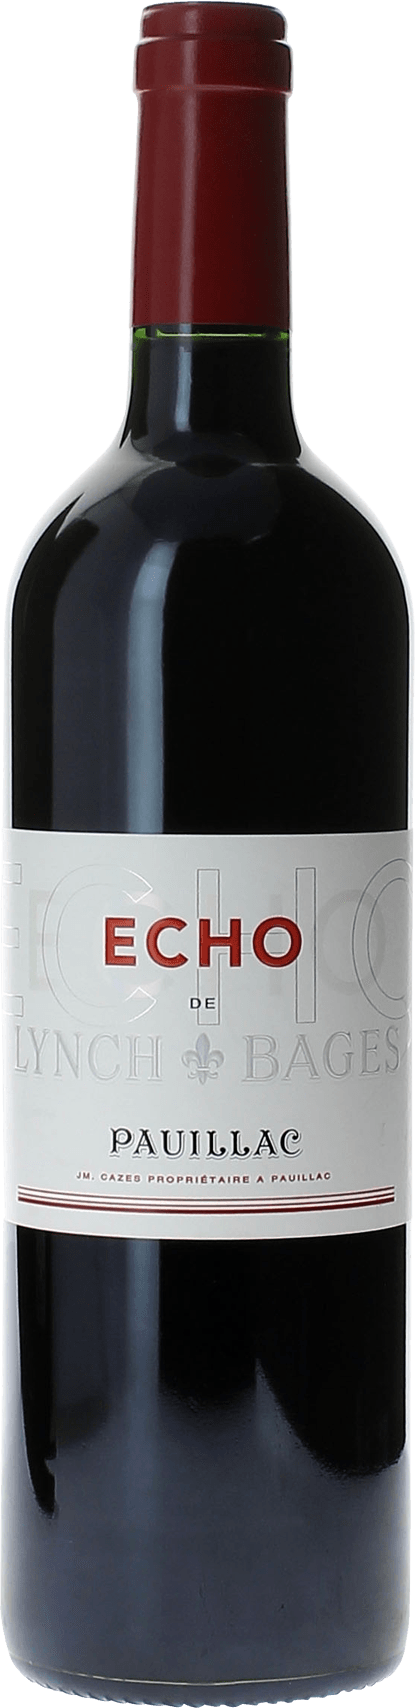 Echo lynch bages 2013 2me vin de LYNCH BAGES Pauillac, Bordeaux rouge